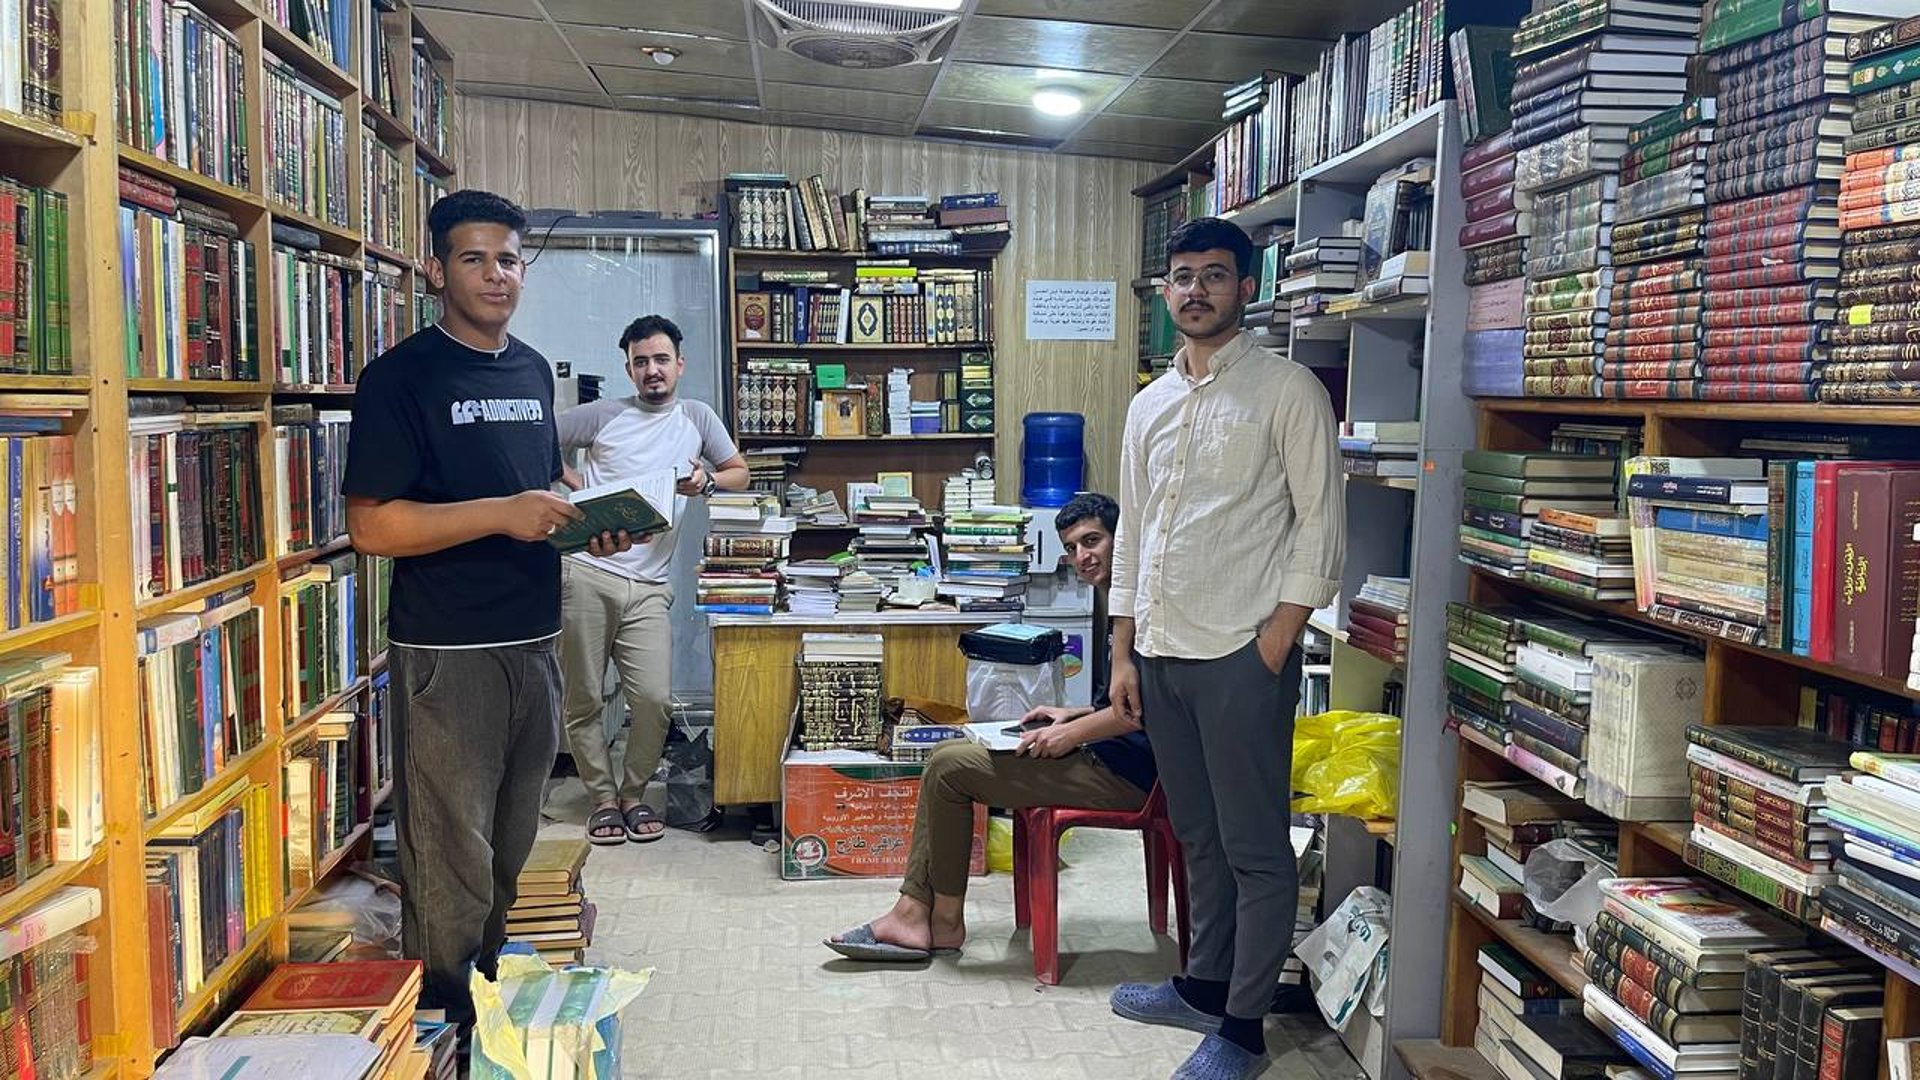 استغاثة بشباب مدينة الصدر: لولا مواقفكم لتهدمت المكتبة بقرار الأمانة (صور)